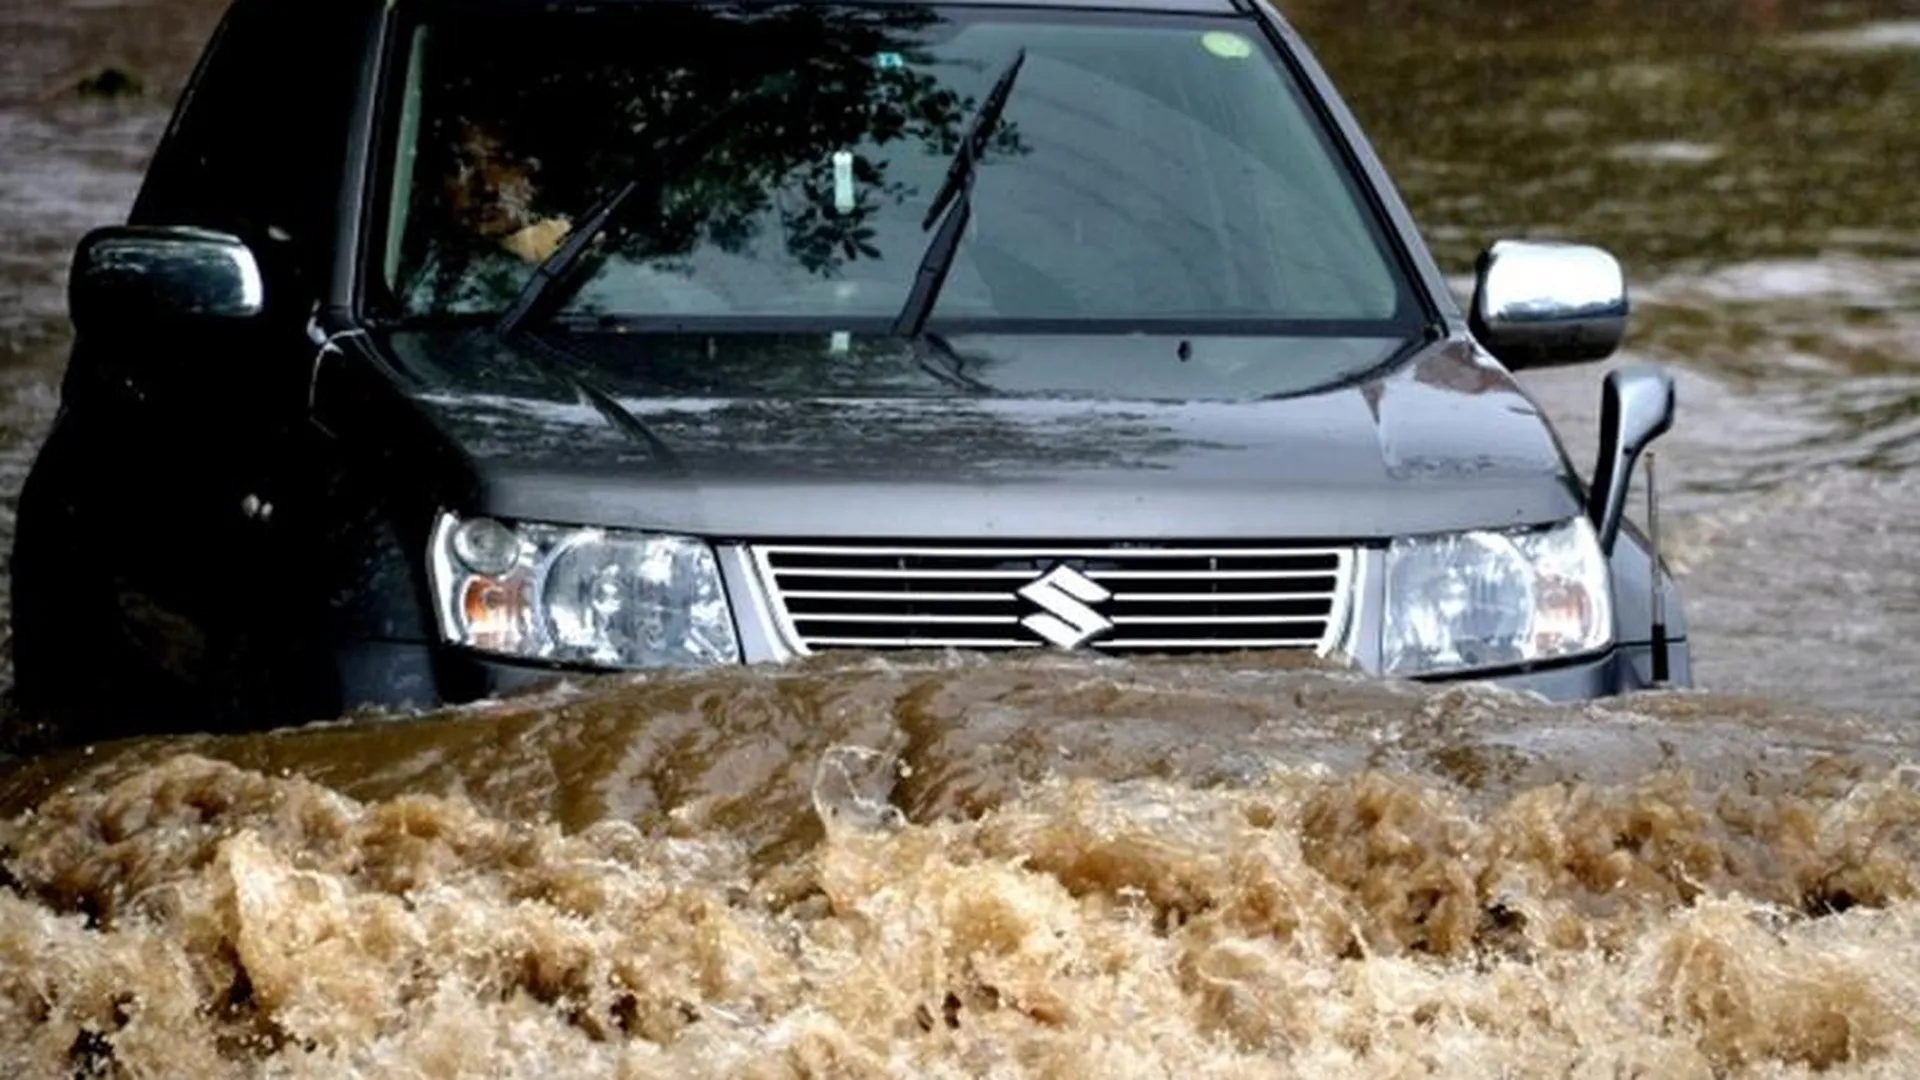 Потоп в Люберцах спровоцировали строители, повредившие водопровод - Ружицкий